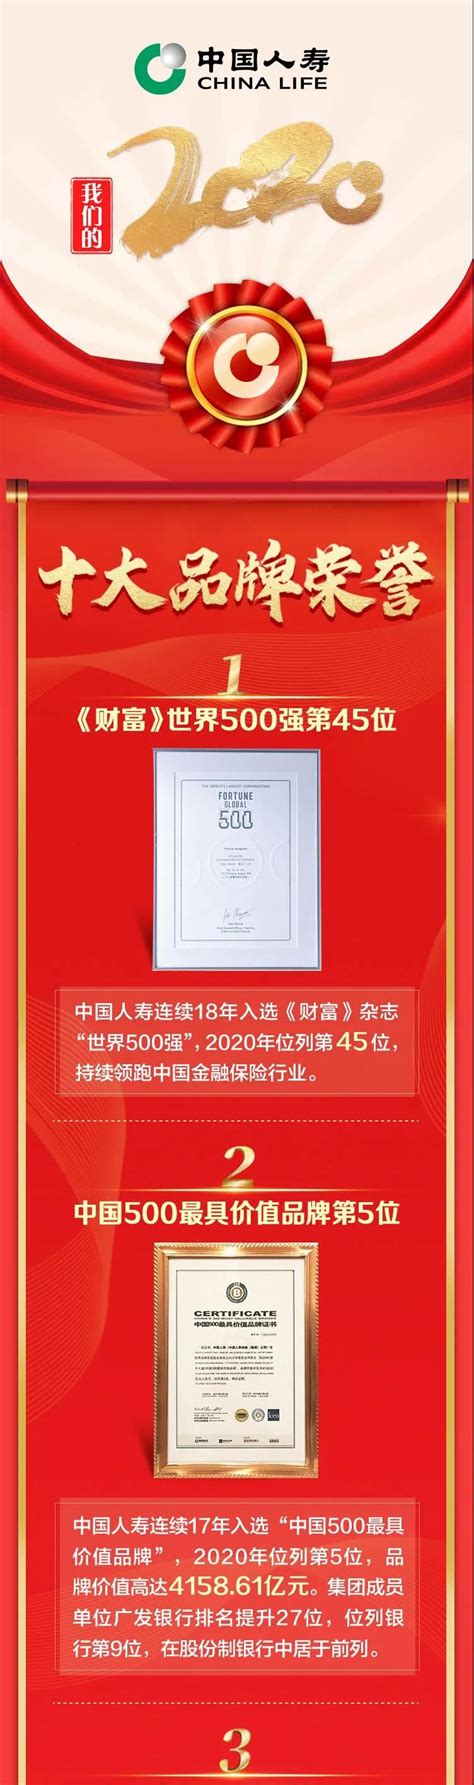 中国人寿2020年度十大品牌荣誉 - 商业 - 济宁新闻网